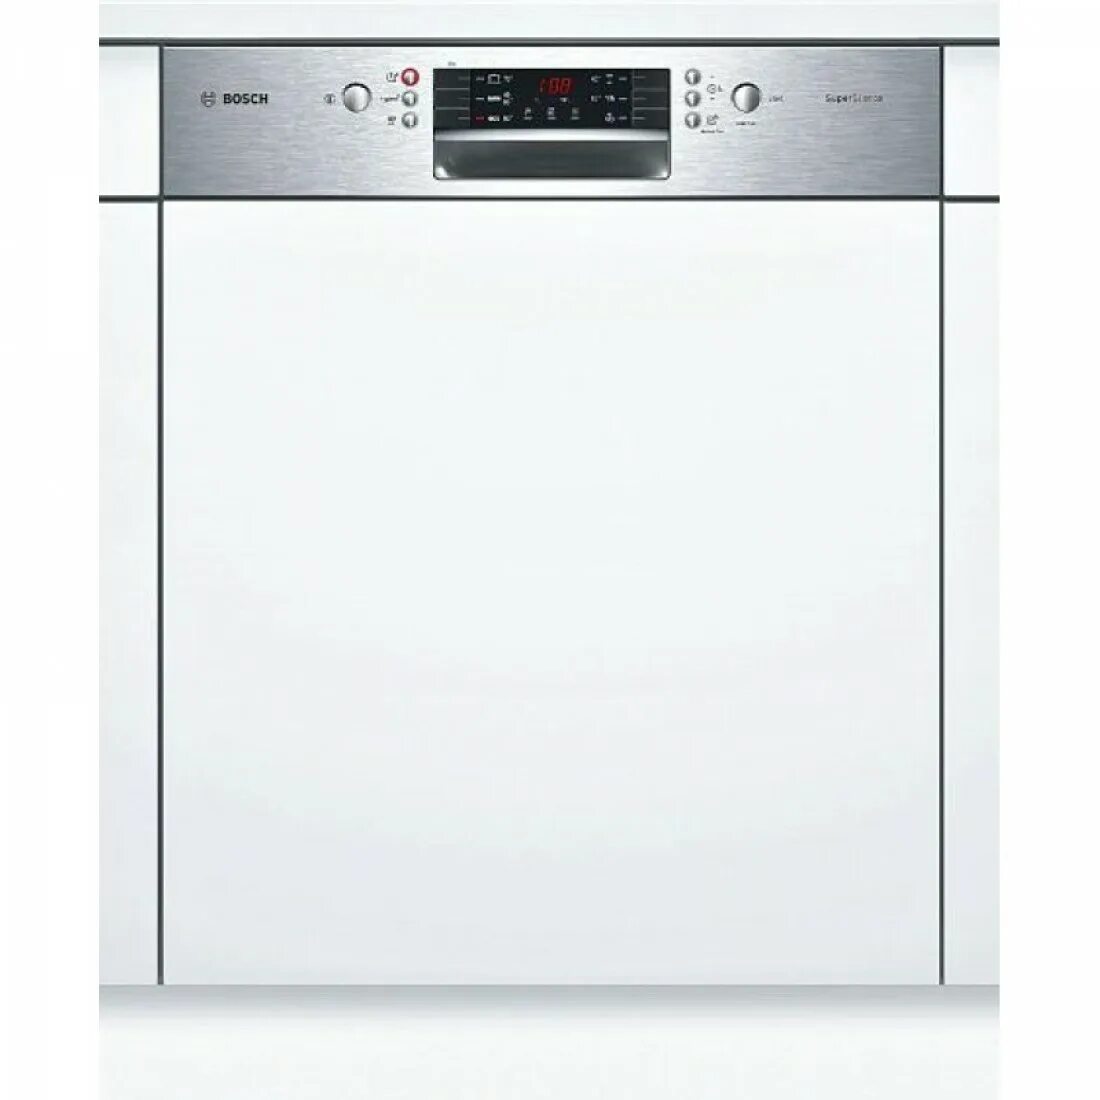 Посудомоечная машина Siemens SN 536s01 ke. Bosch SMI 46ks00 t. Посудомоечная машина Bosch 60 встраиваемая. Посудомоечная машина Bosch spi46ms01e.